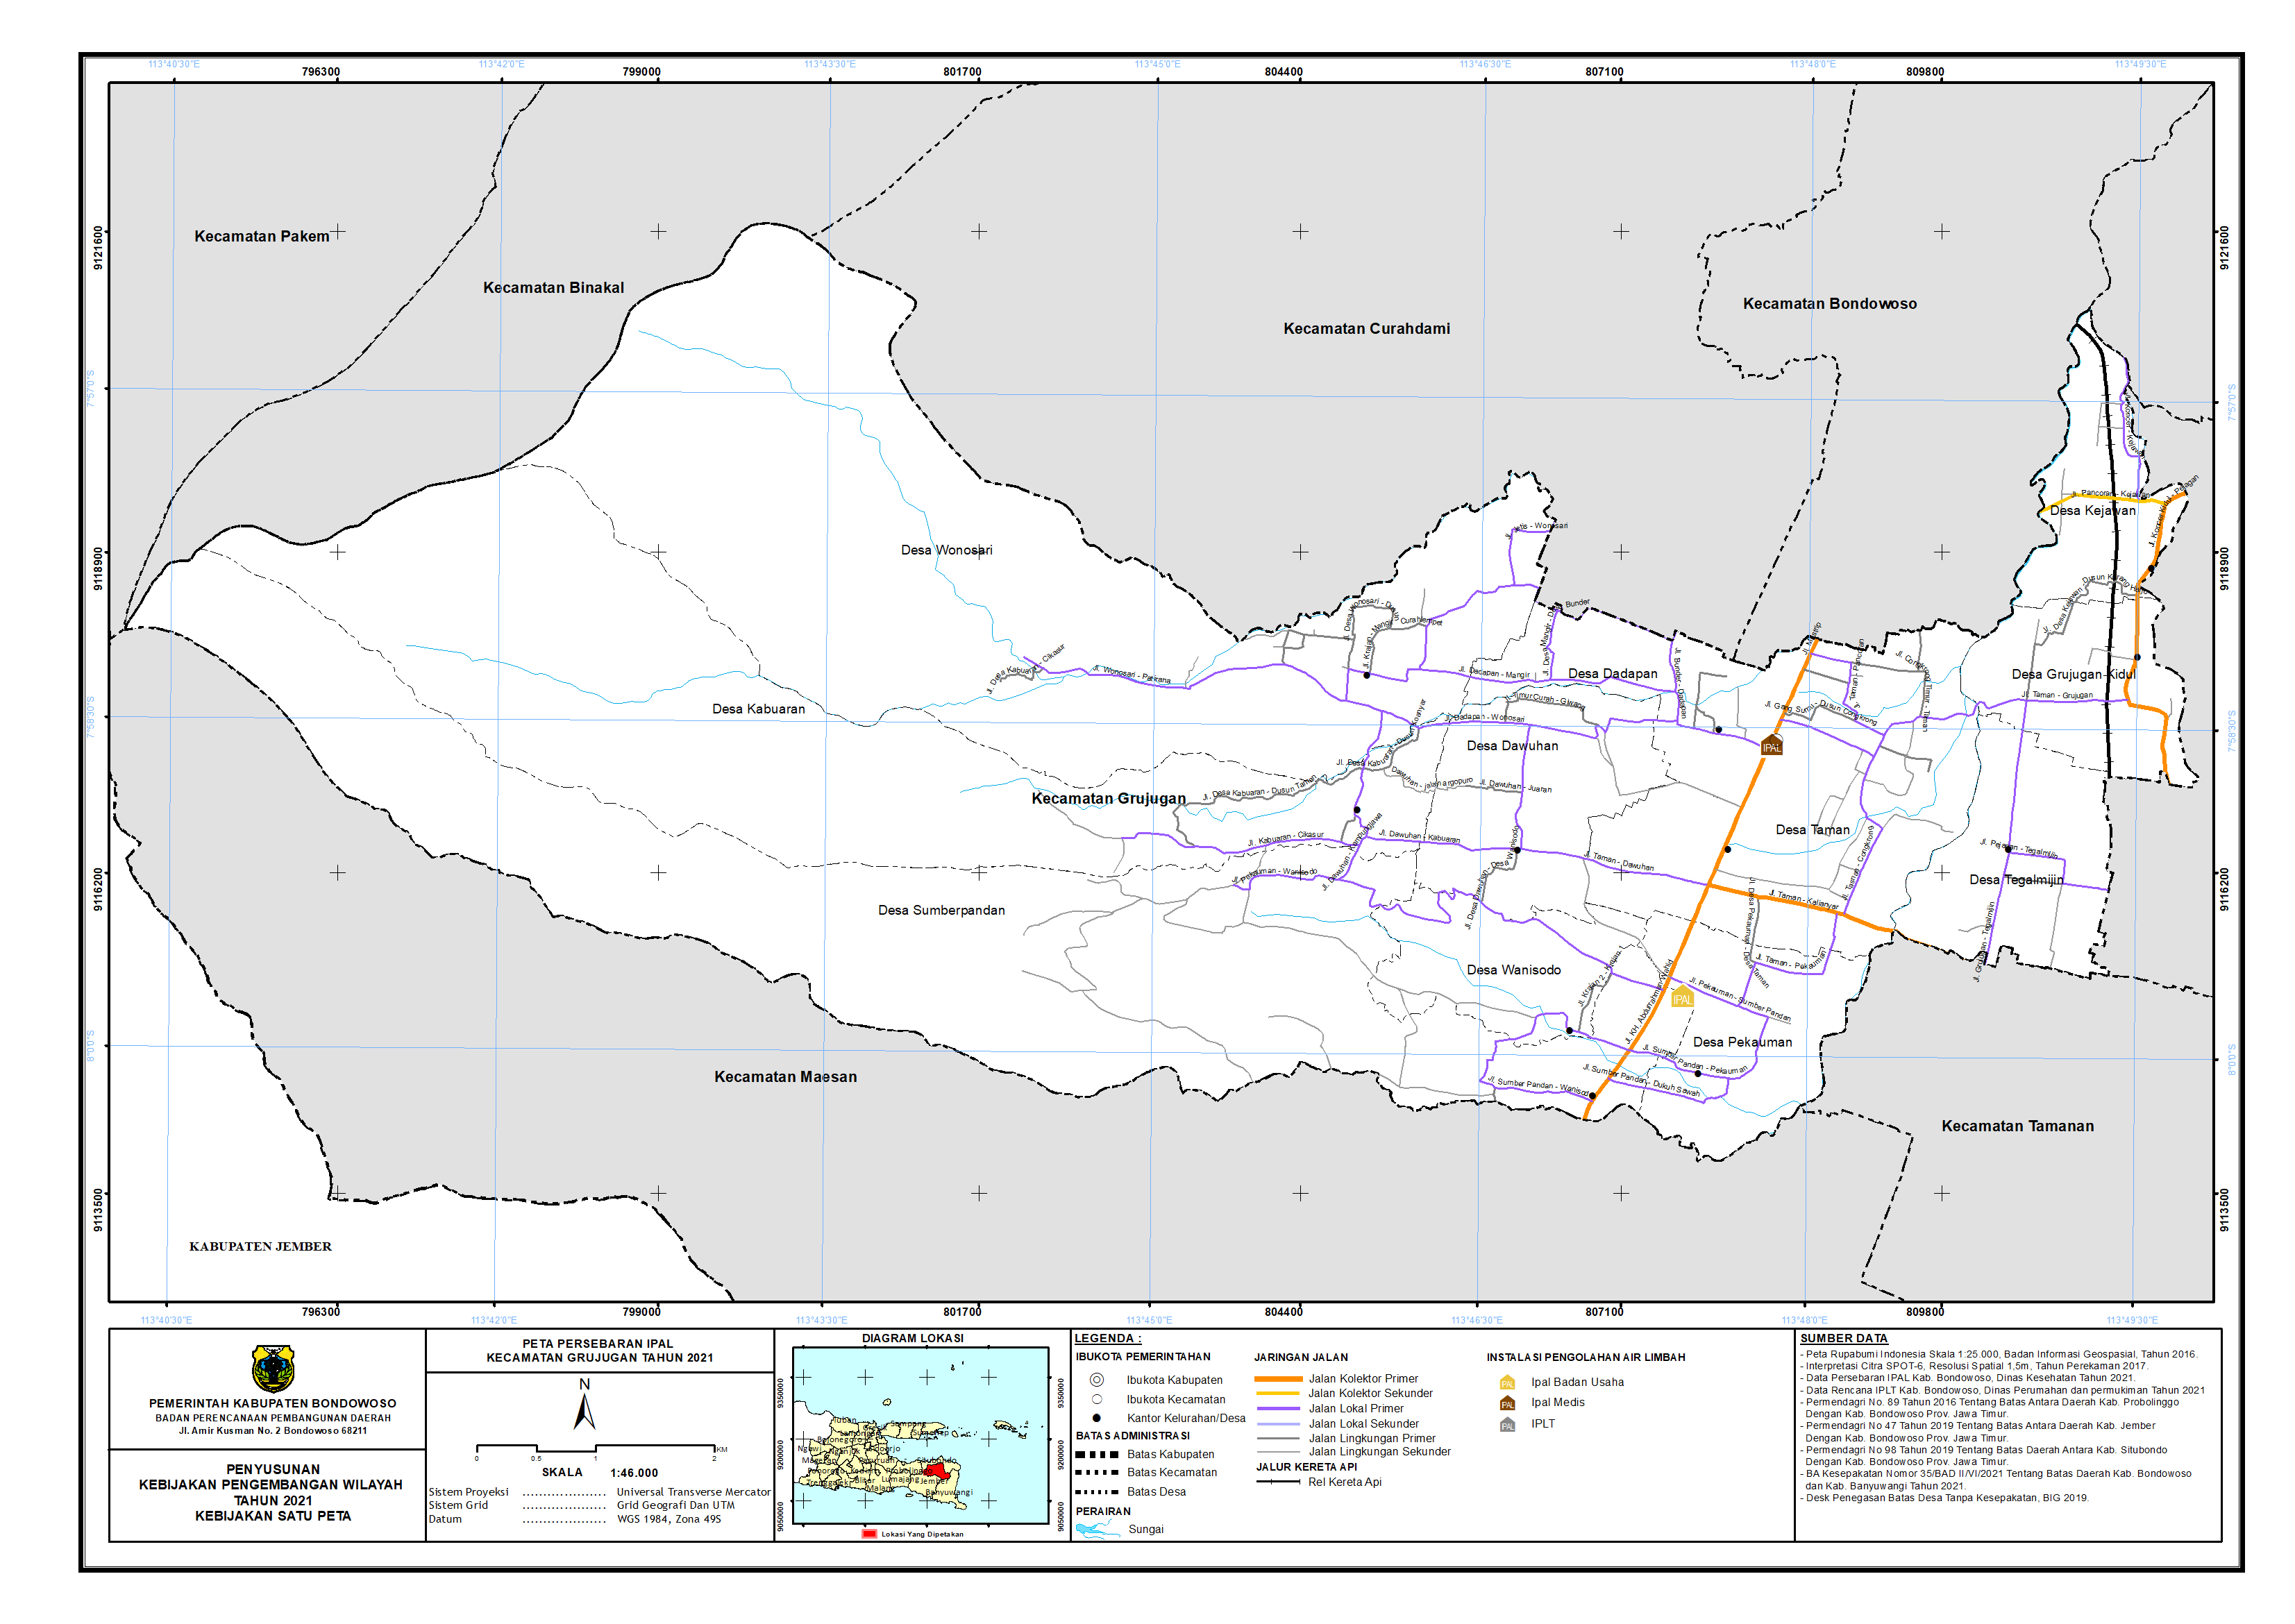 Peta Persebaran IPAL Kecamatan Grujugan.png